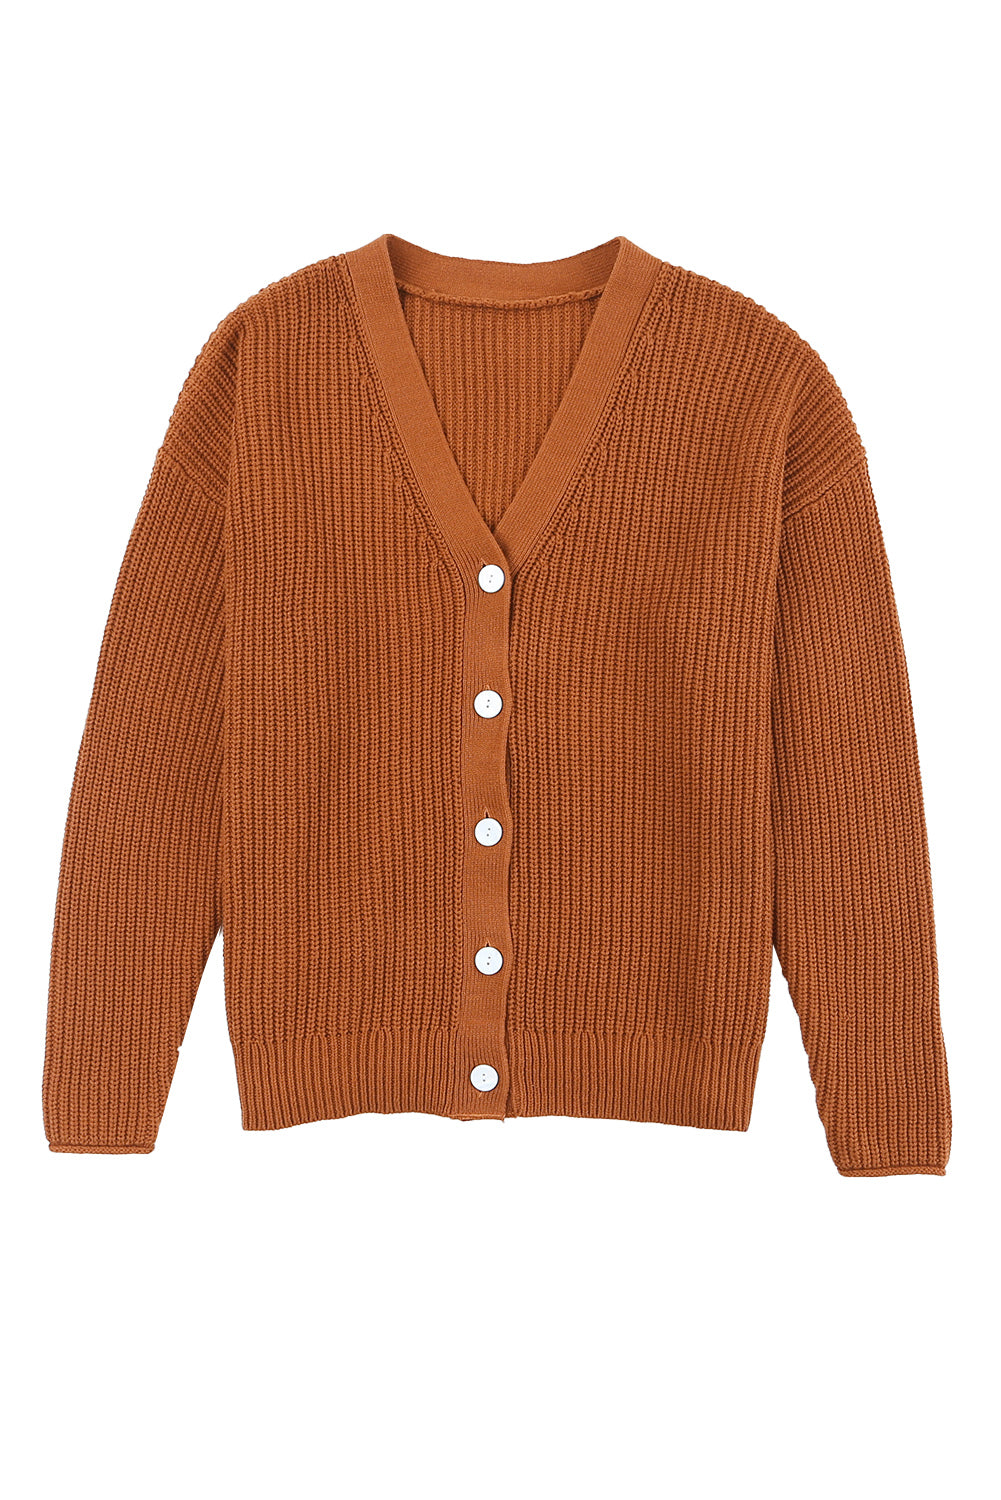 Brown V Neck Drop Shoulder Buttons Cardigan Sweaters & Cardigans JT's Designer Fashion